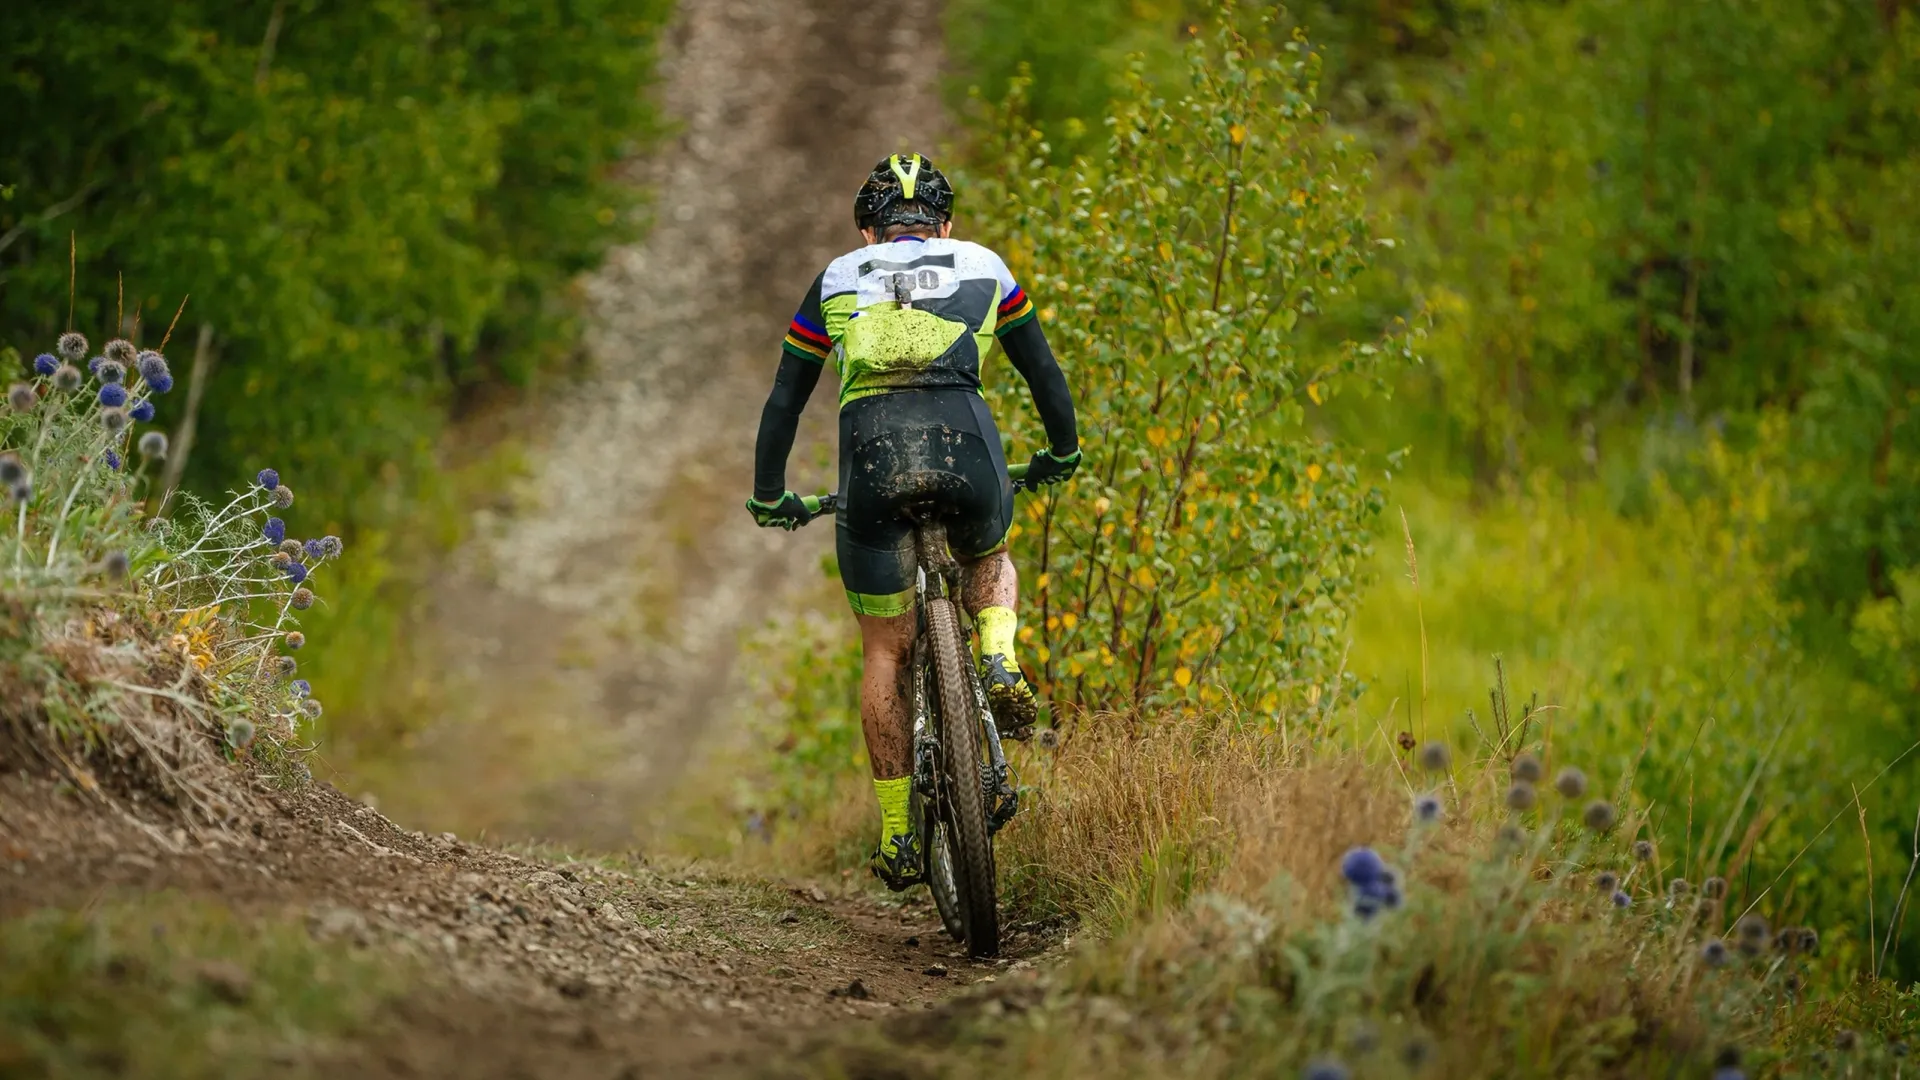 В категории "Профи" велосипедистам предстоит преодолеть 10 этапов. Фото: Real Sports Photos / Shutterstock / Fotodom